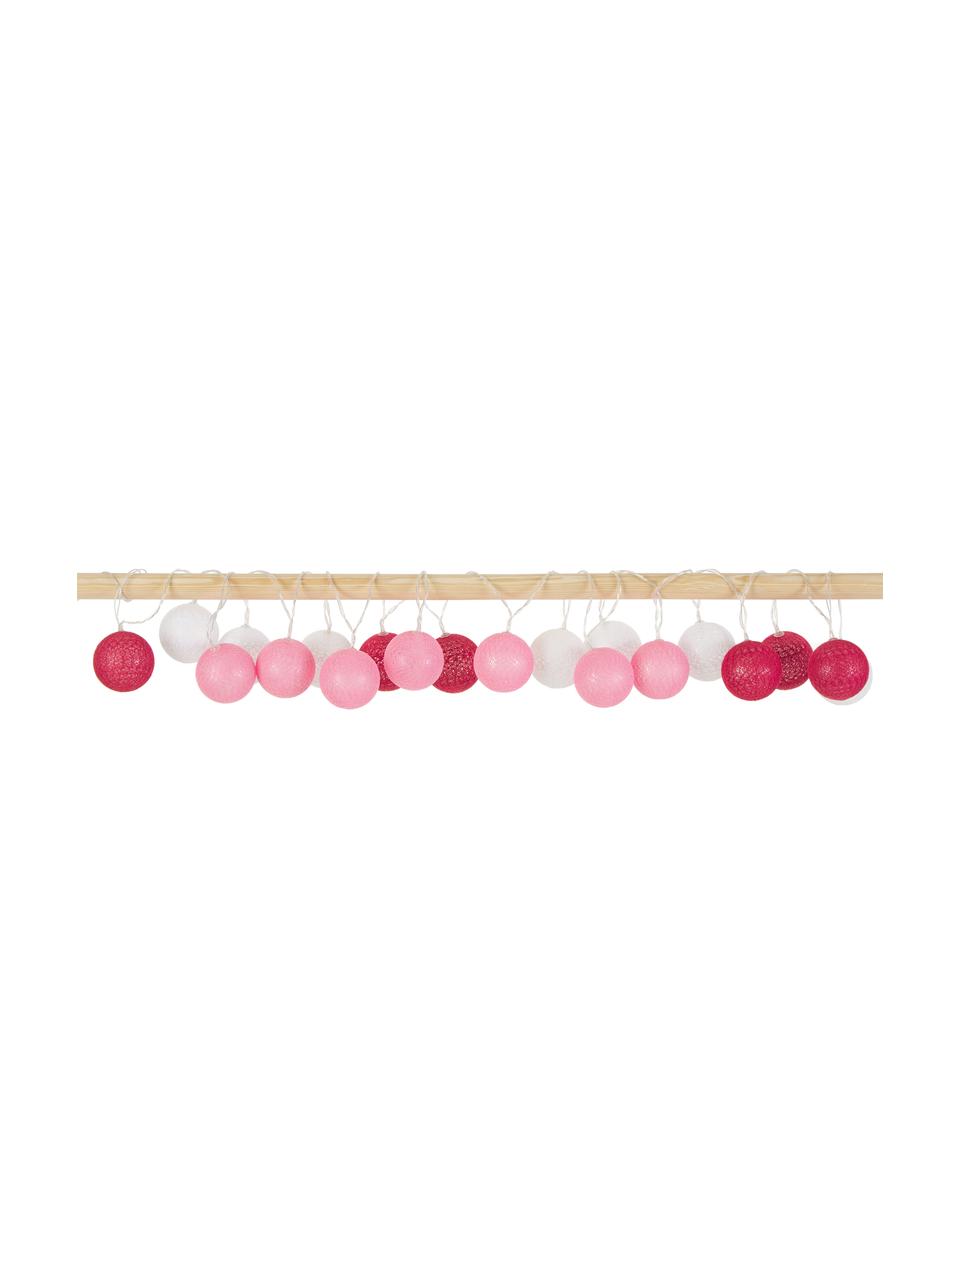 Světelný LED řetěz Bellin, 320 cm, 20 lampionů, Růžová, švestková, bílá, D 320 cm